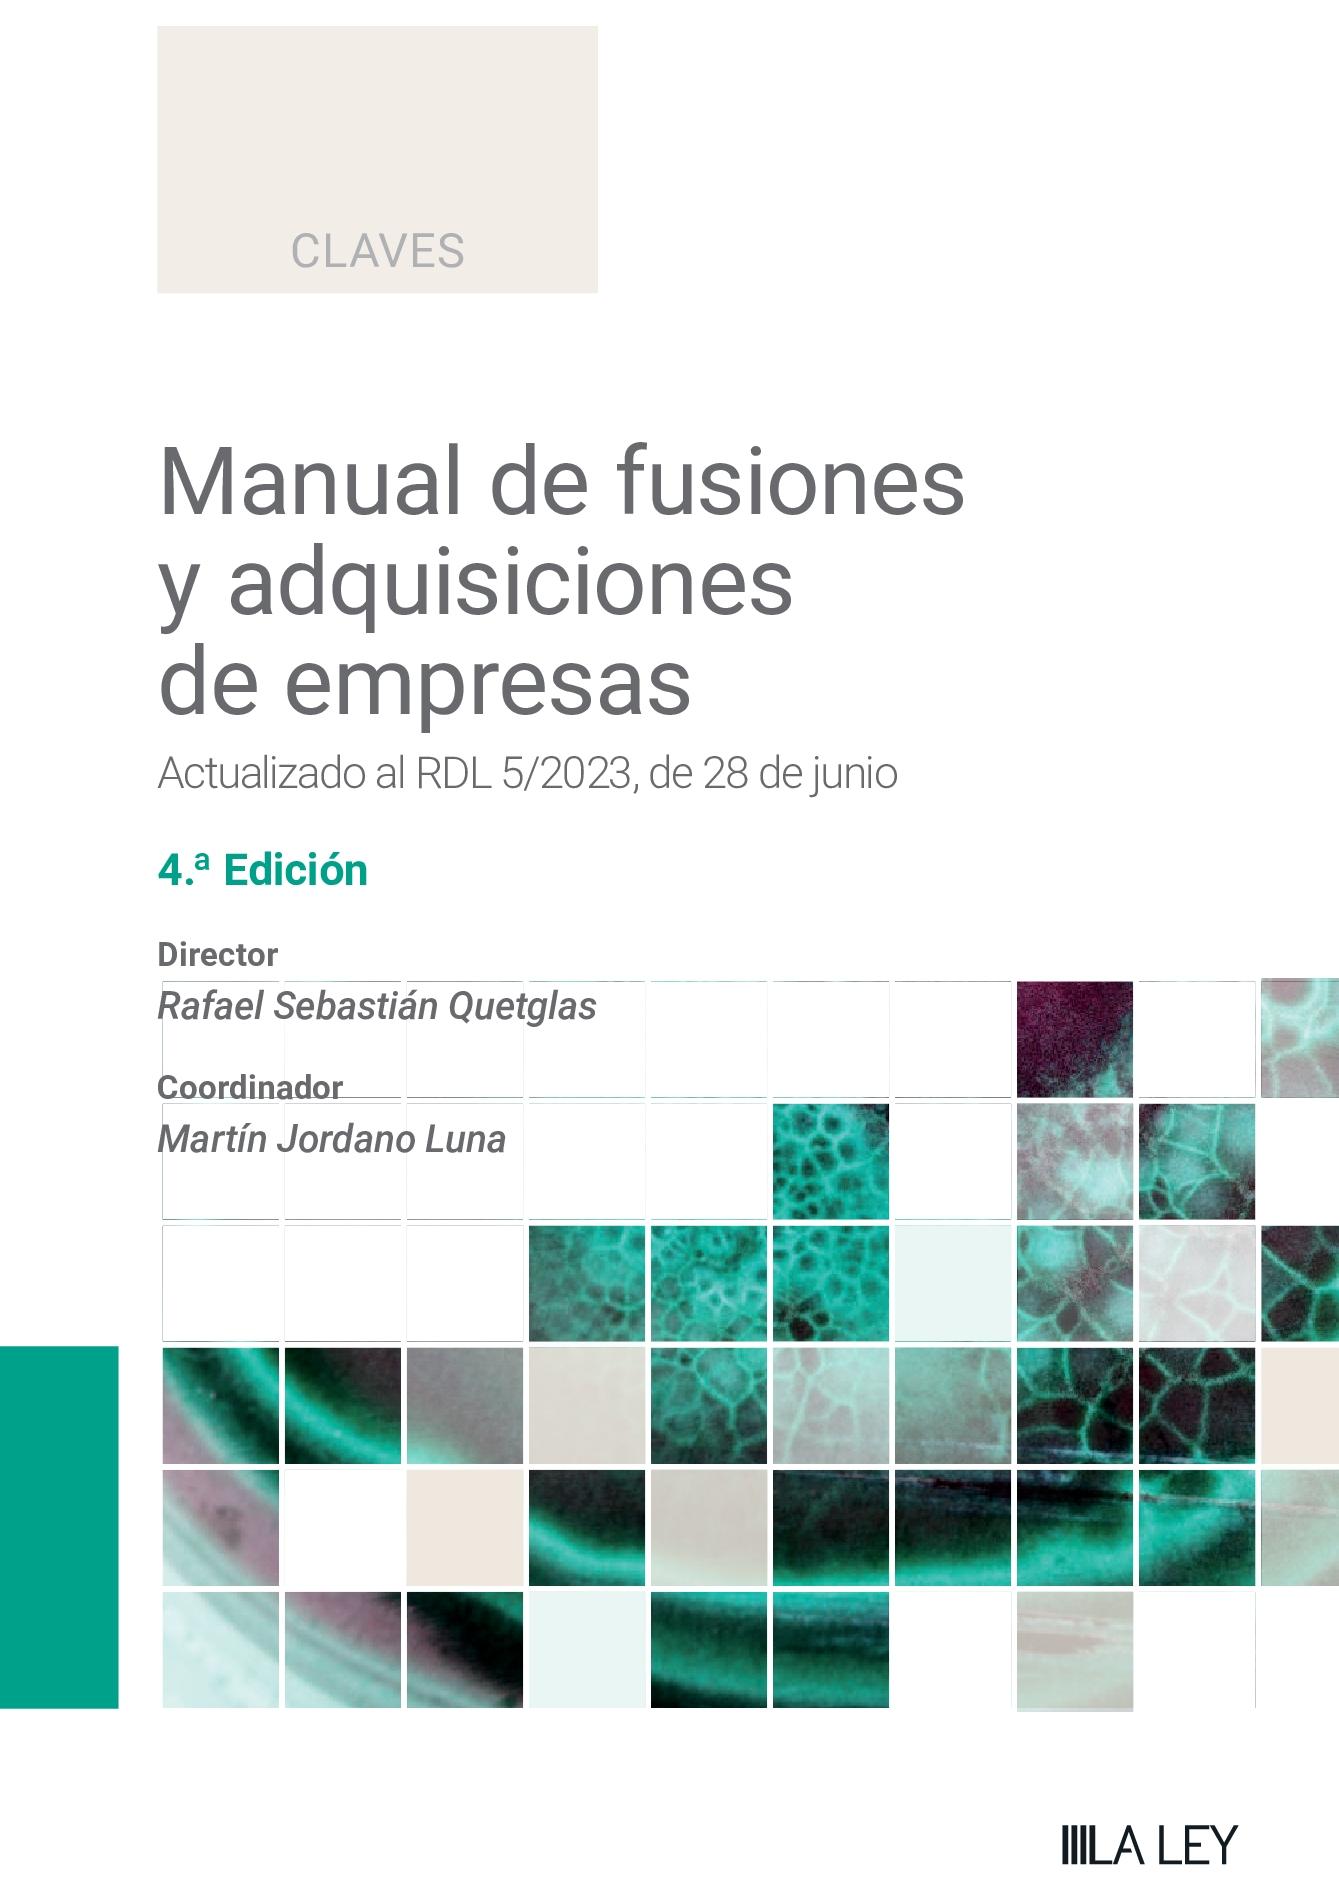 Manual de fusiones y adquisiciones de empresas "Actualizado al RDL 5/2023, de 28 de junio"